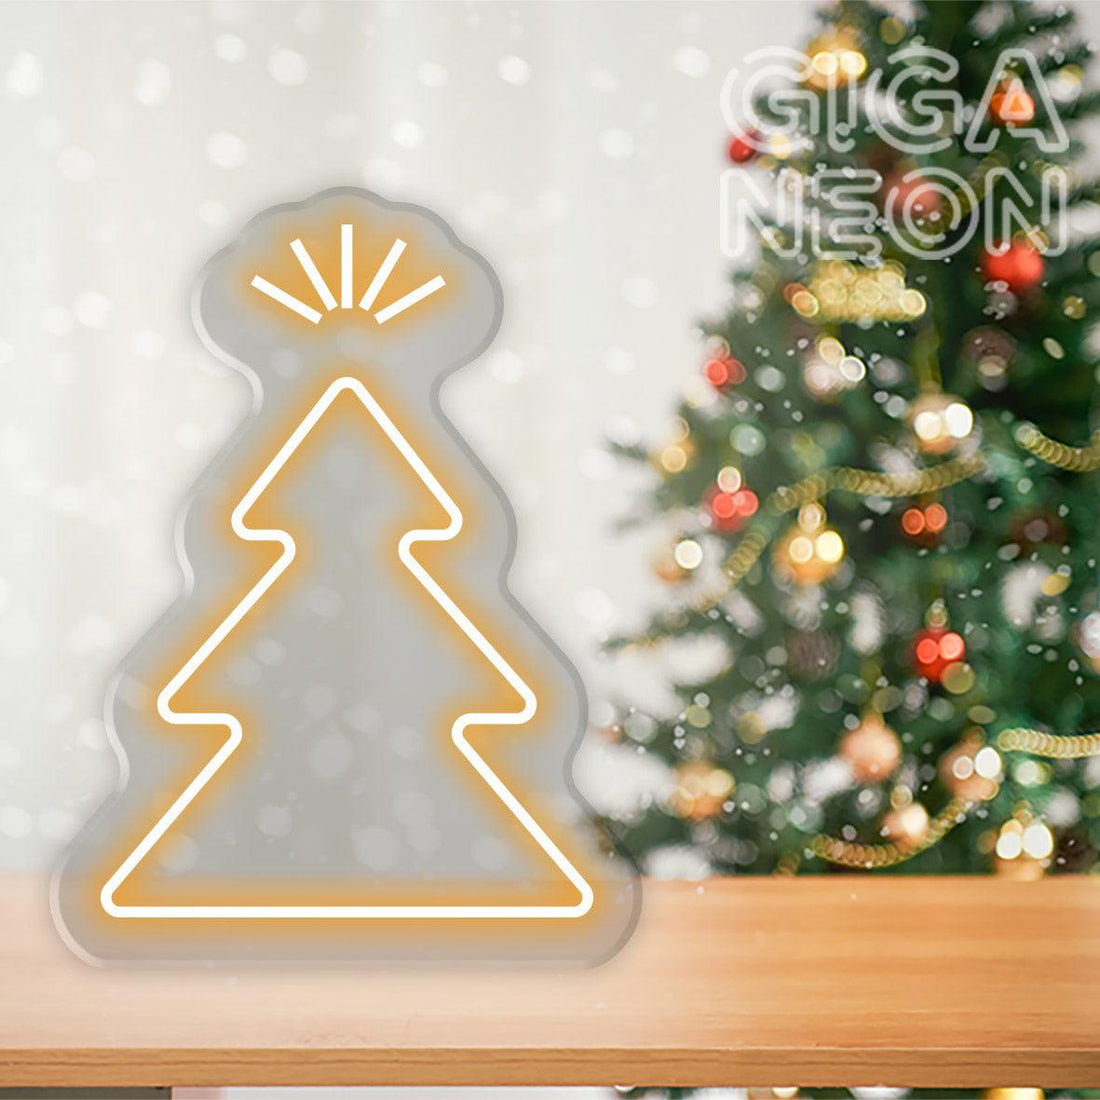 CHRISTMAS NEON SIGNS - CHRISTMAS TREE ICON 01 - GIGA NEON